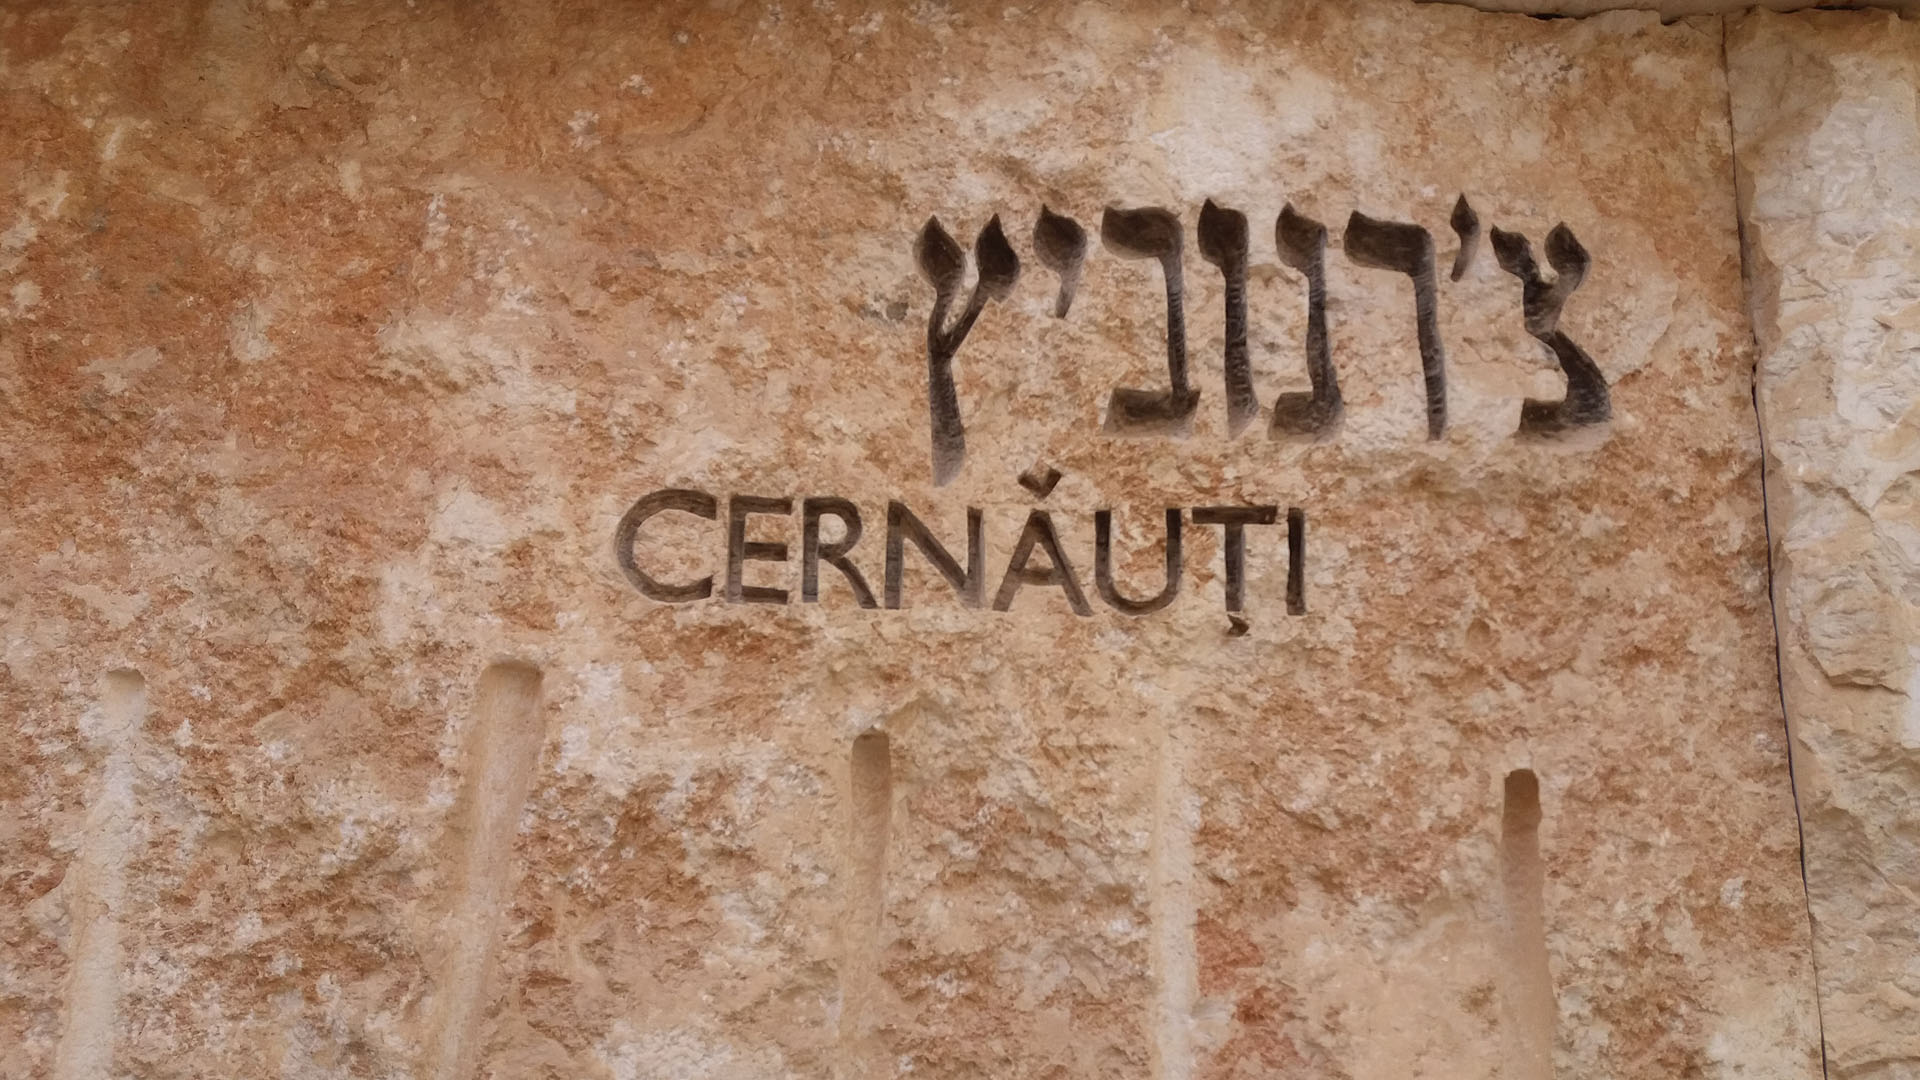 Die Jerusalemer Gedenkstätte Yad Vashem würdigt mit dieser Inschrift die jüdische Gemeinde in Czernowitz